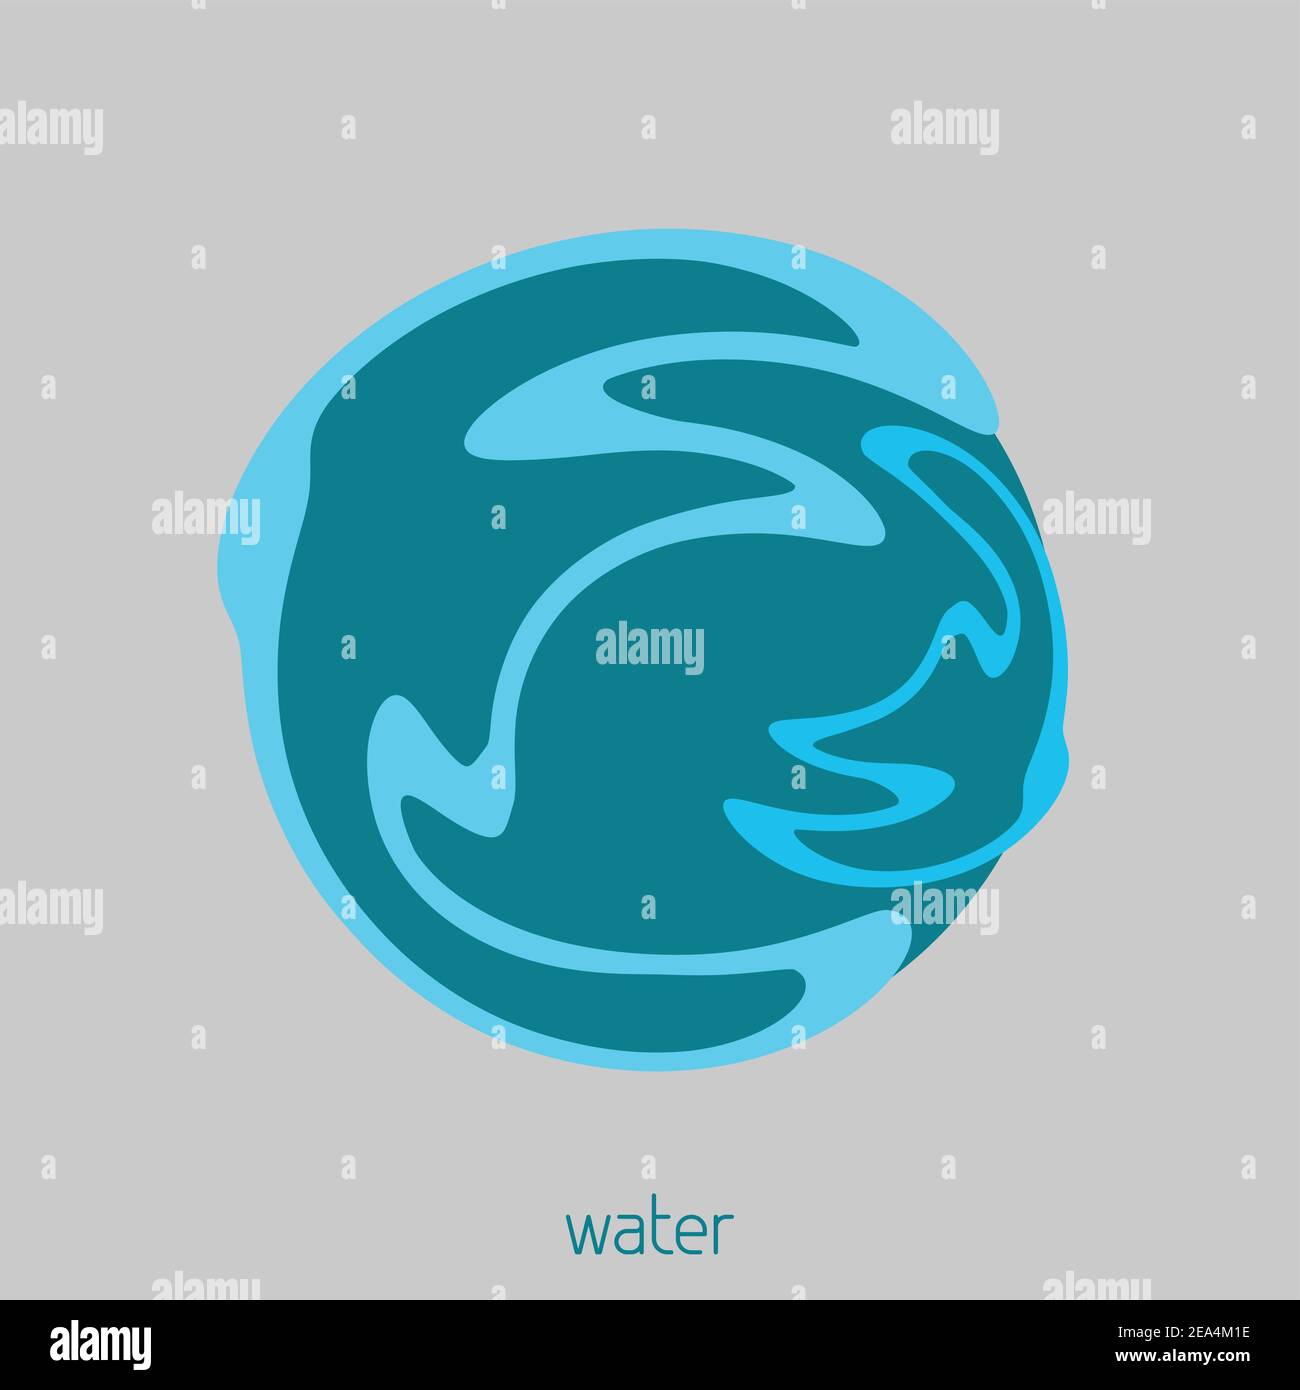 Vorlage eines einfachen Logos für alles, was mit klarem oder tiefgründigen artesischen Wasser verbunden ist. Vektor Stock Vektor